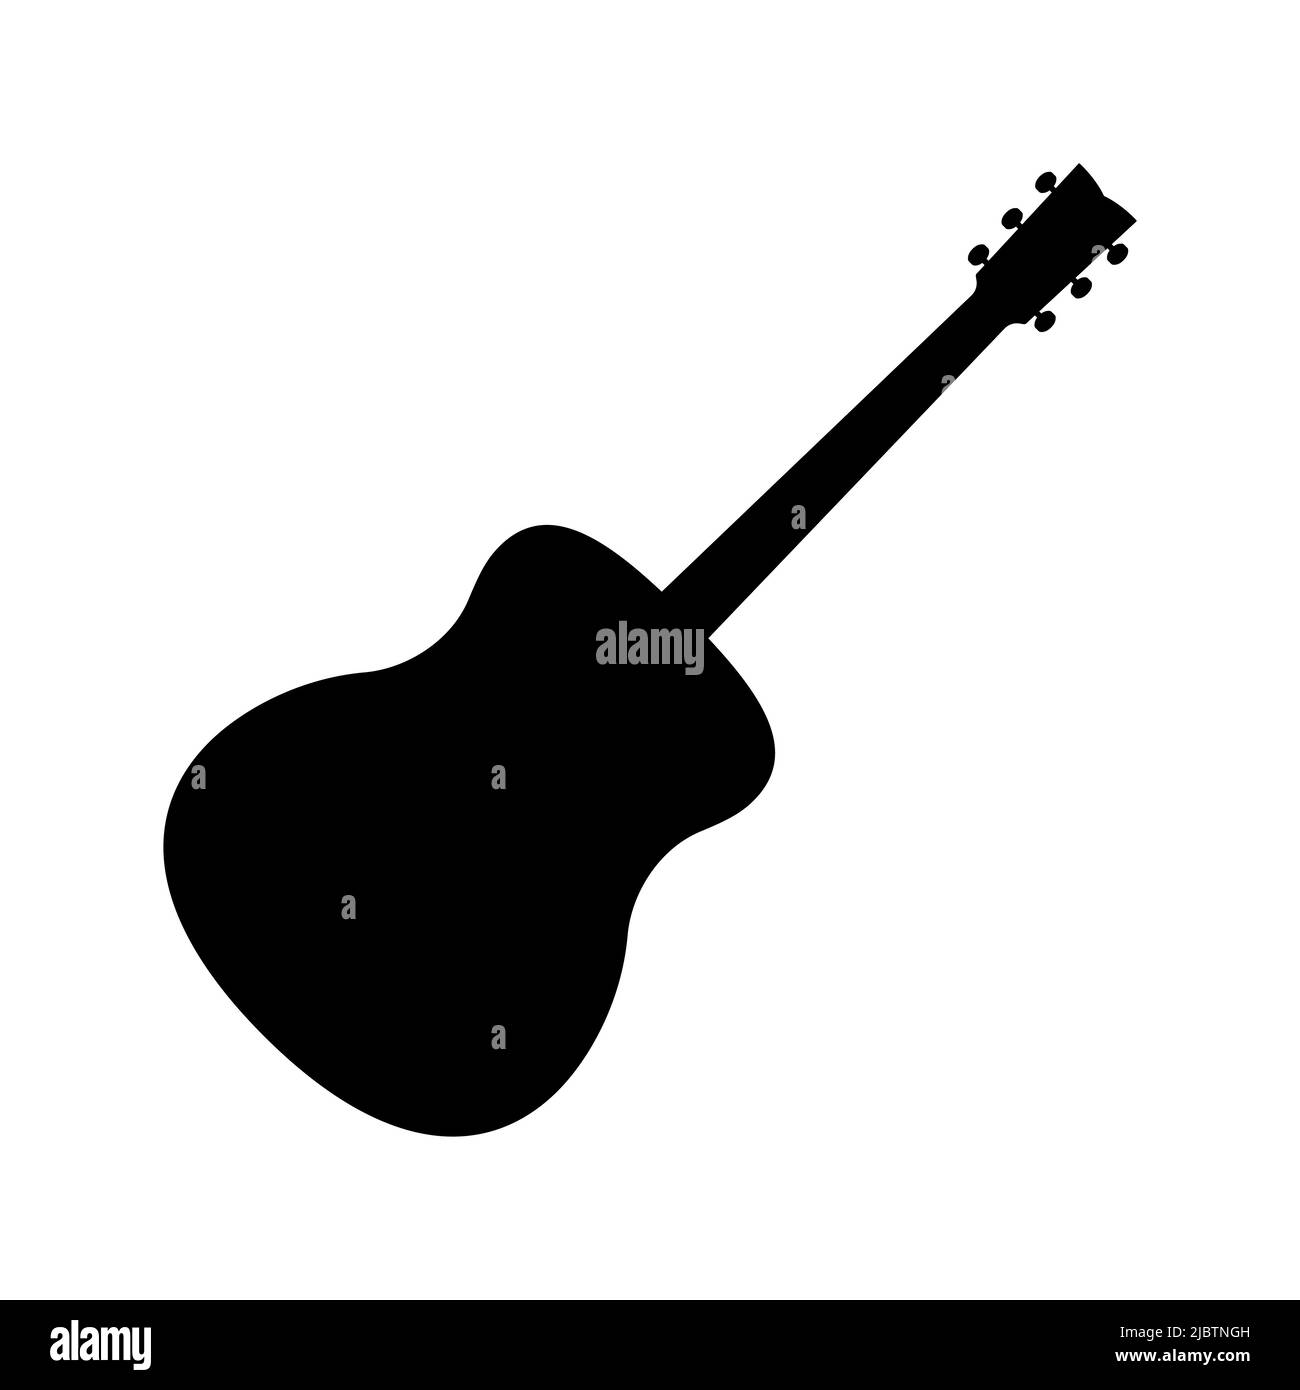 Curiosidad Jane Austen Persona a cargo Musica guitarra Imágenes de stock en blanco y negro - Página 3 - Alamy